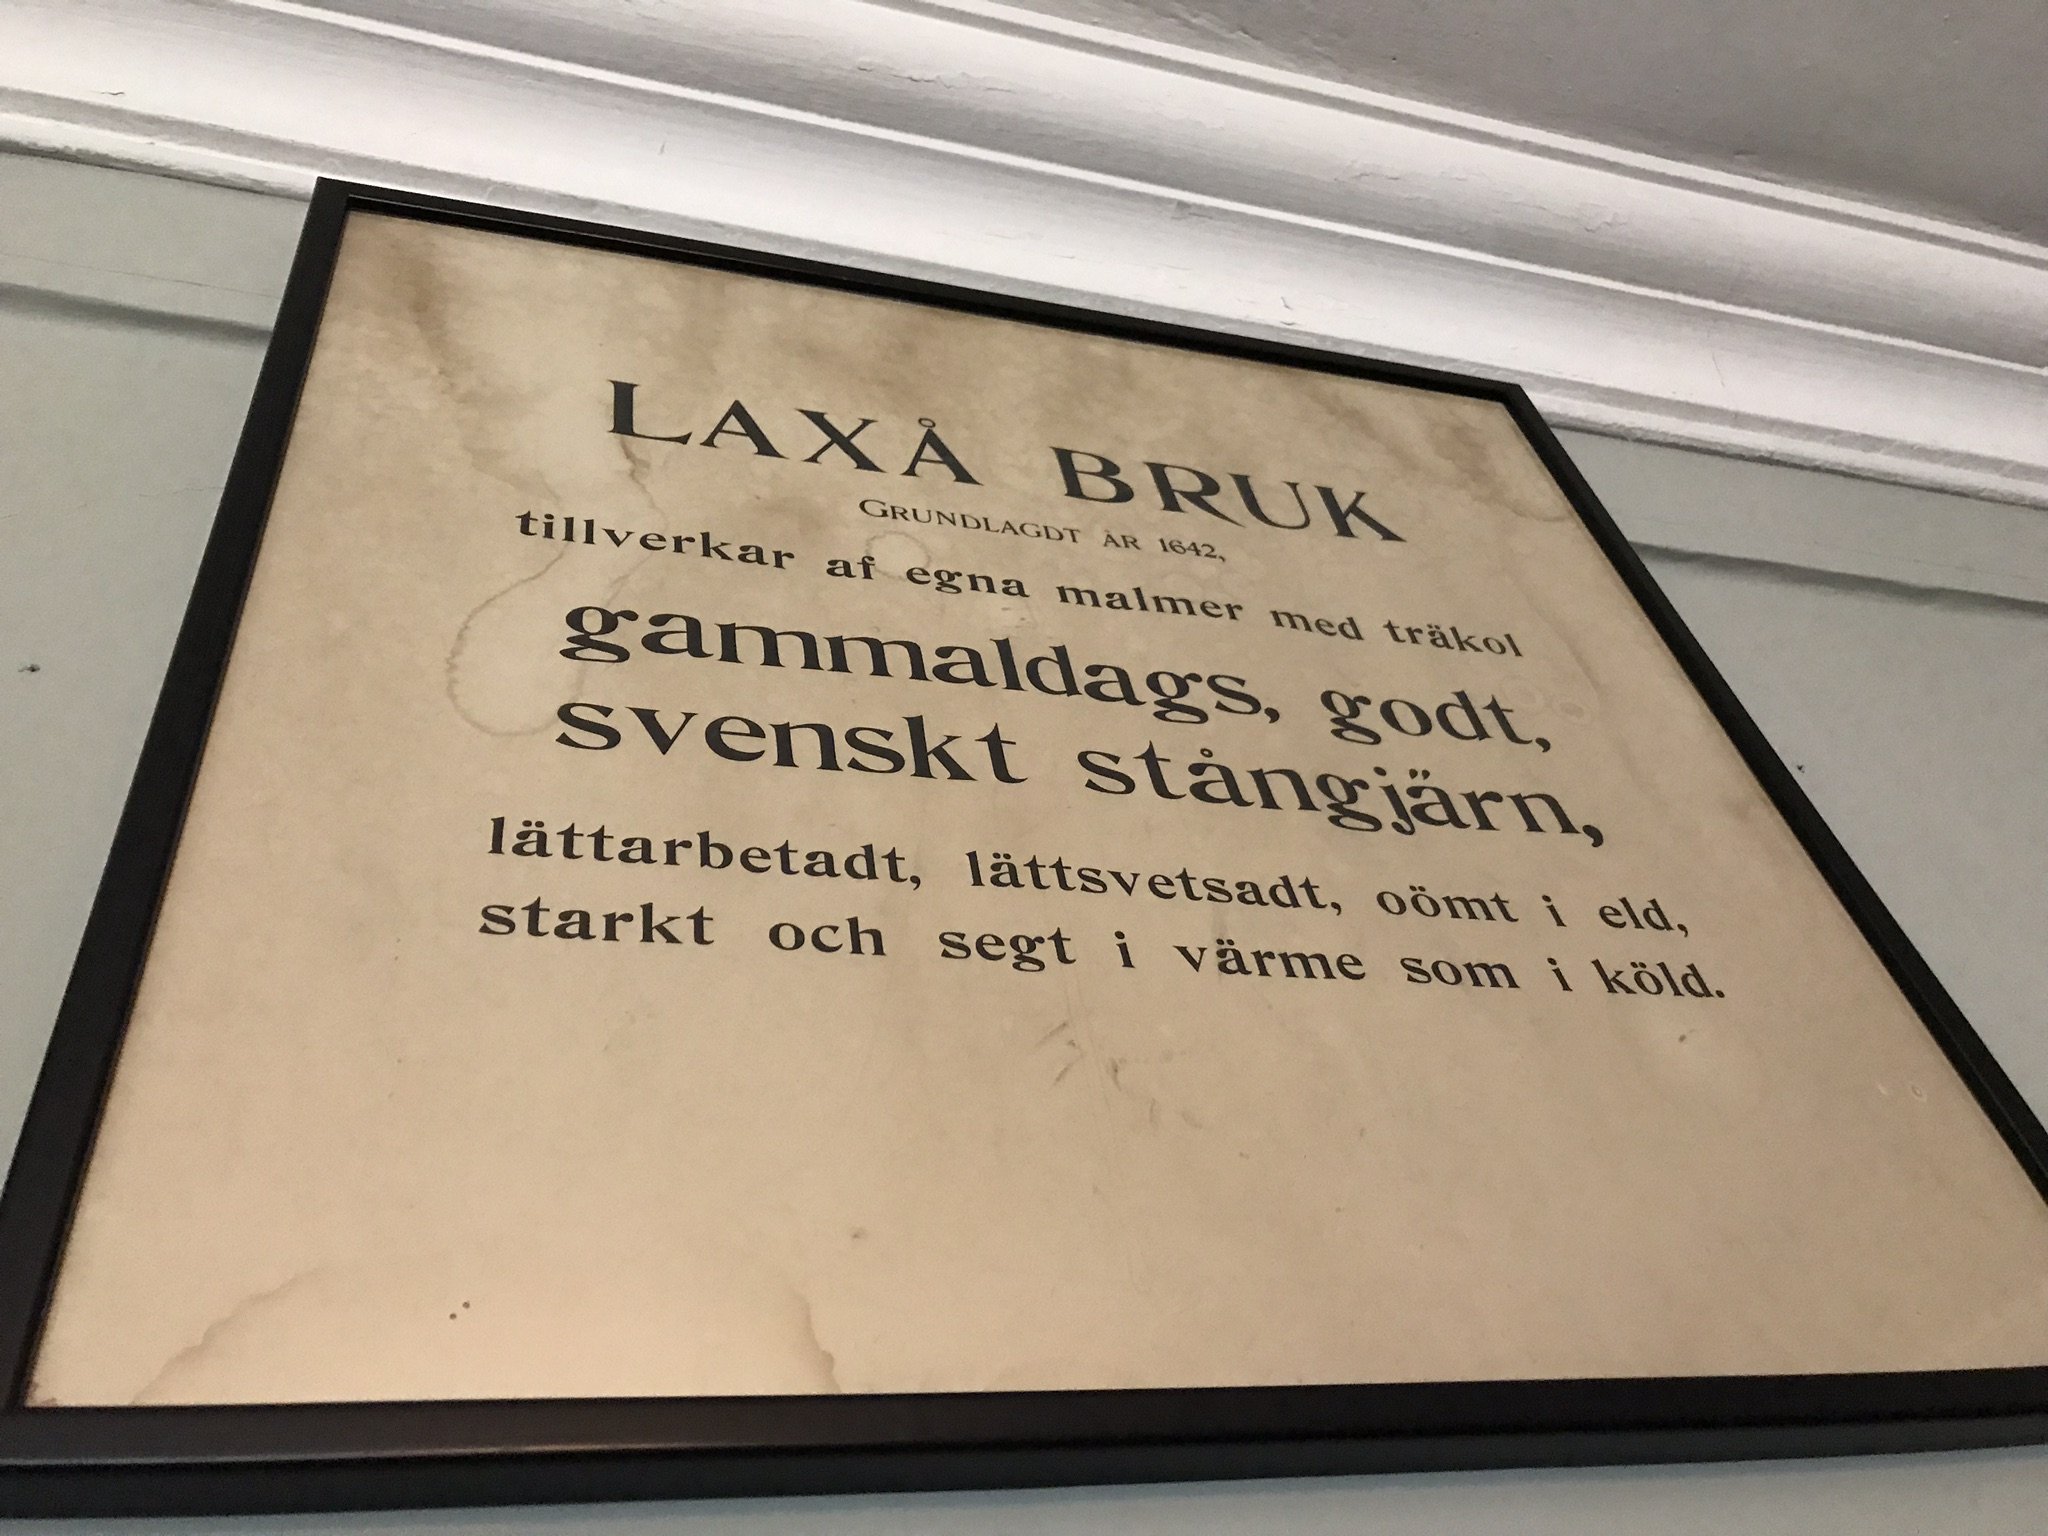 Laxå Bruksmuseum